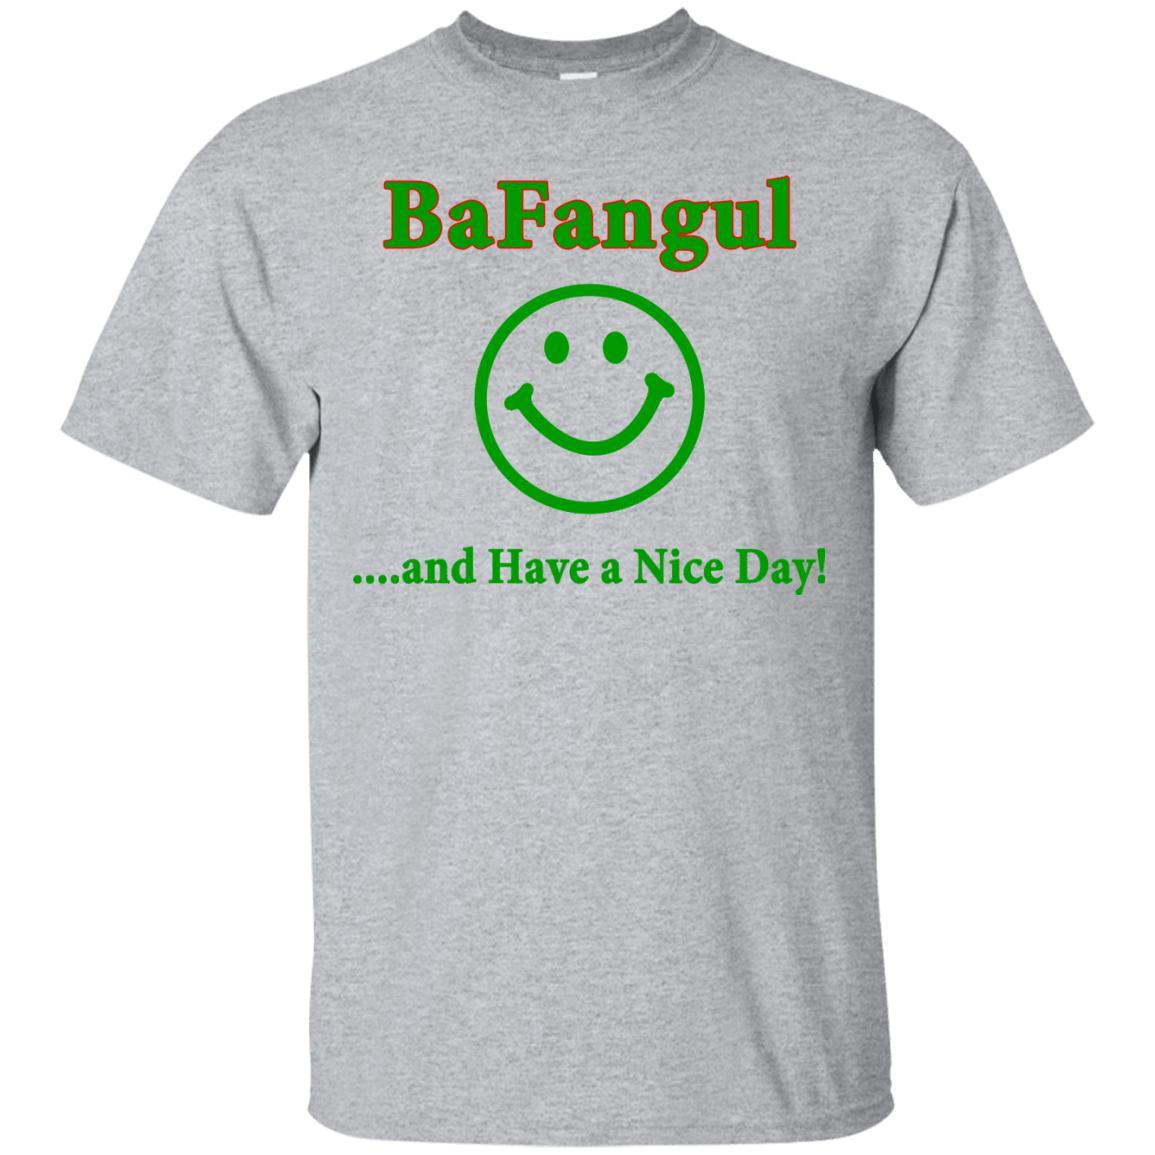 Bafangul Shirt Funny Italian gift.